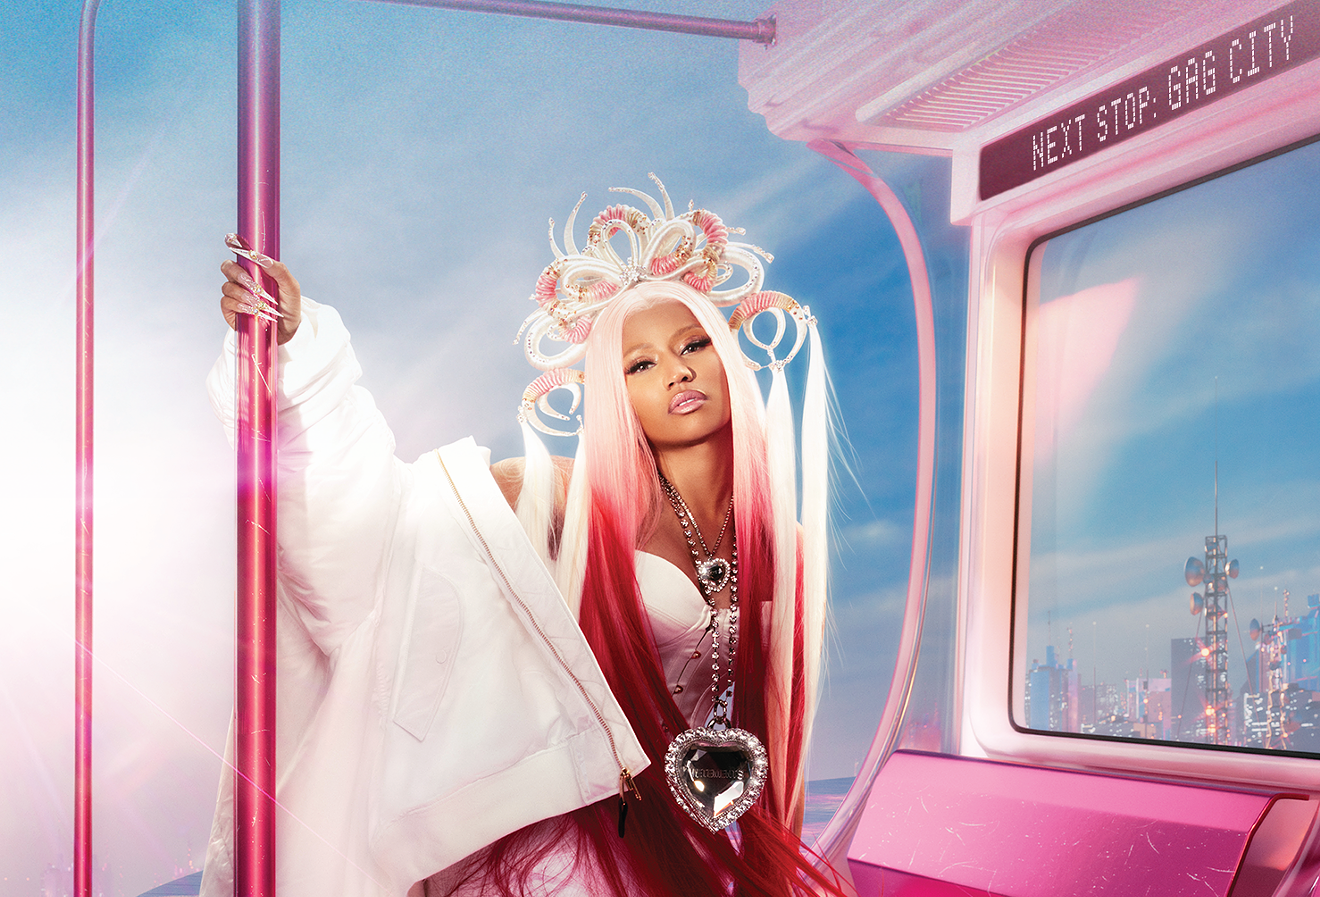 Nicki Minaj is bringing the "Pink Friday 2 World Tour" to Phoenix this week.